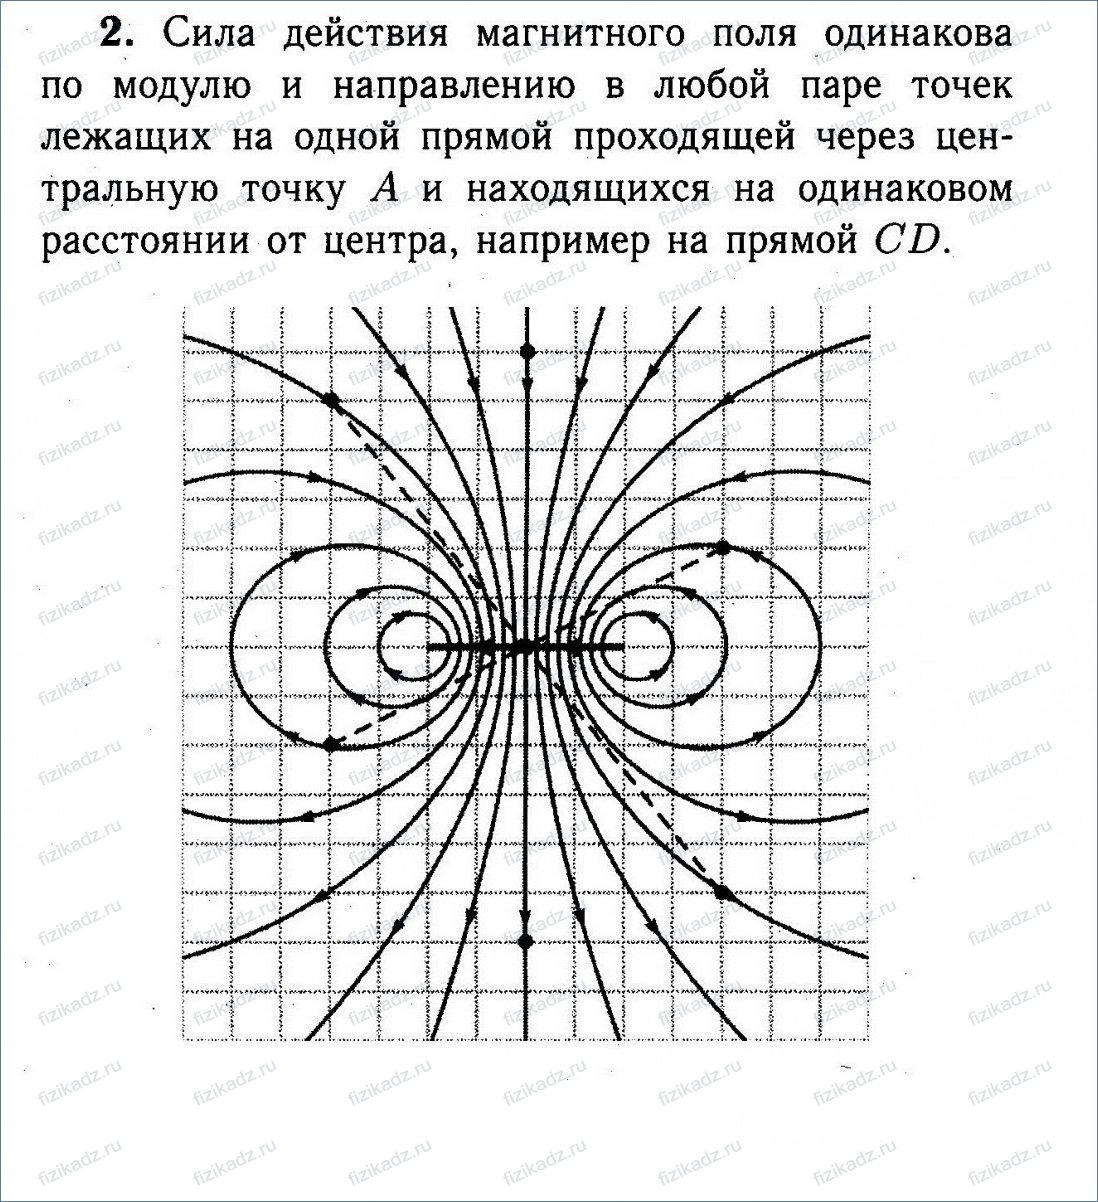 Квадратная рамка расположена в магнитном поле в плоскости магнитных линий так как показано рисунке